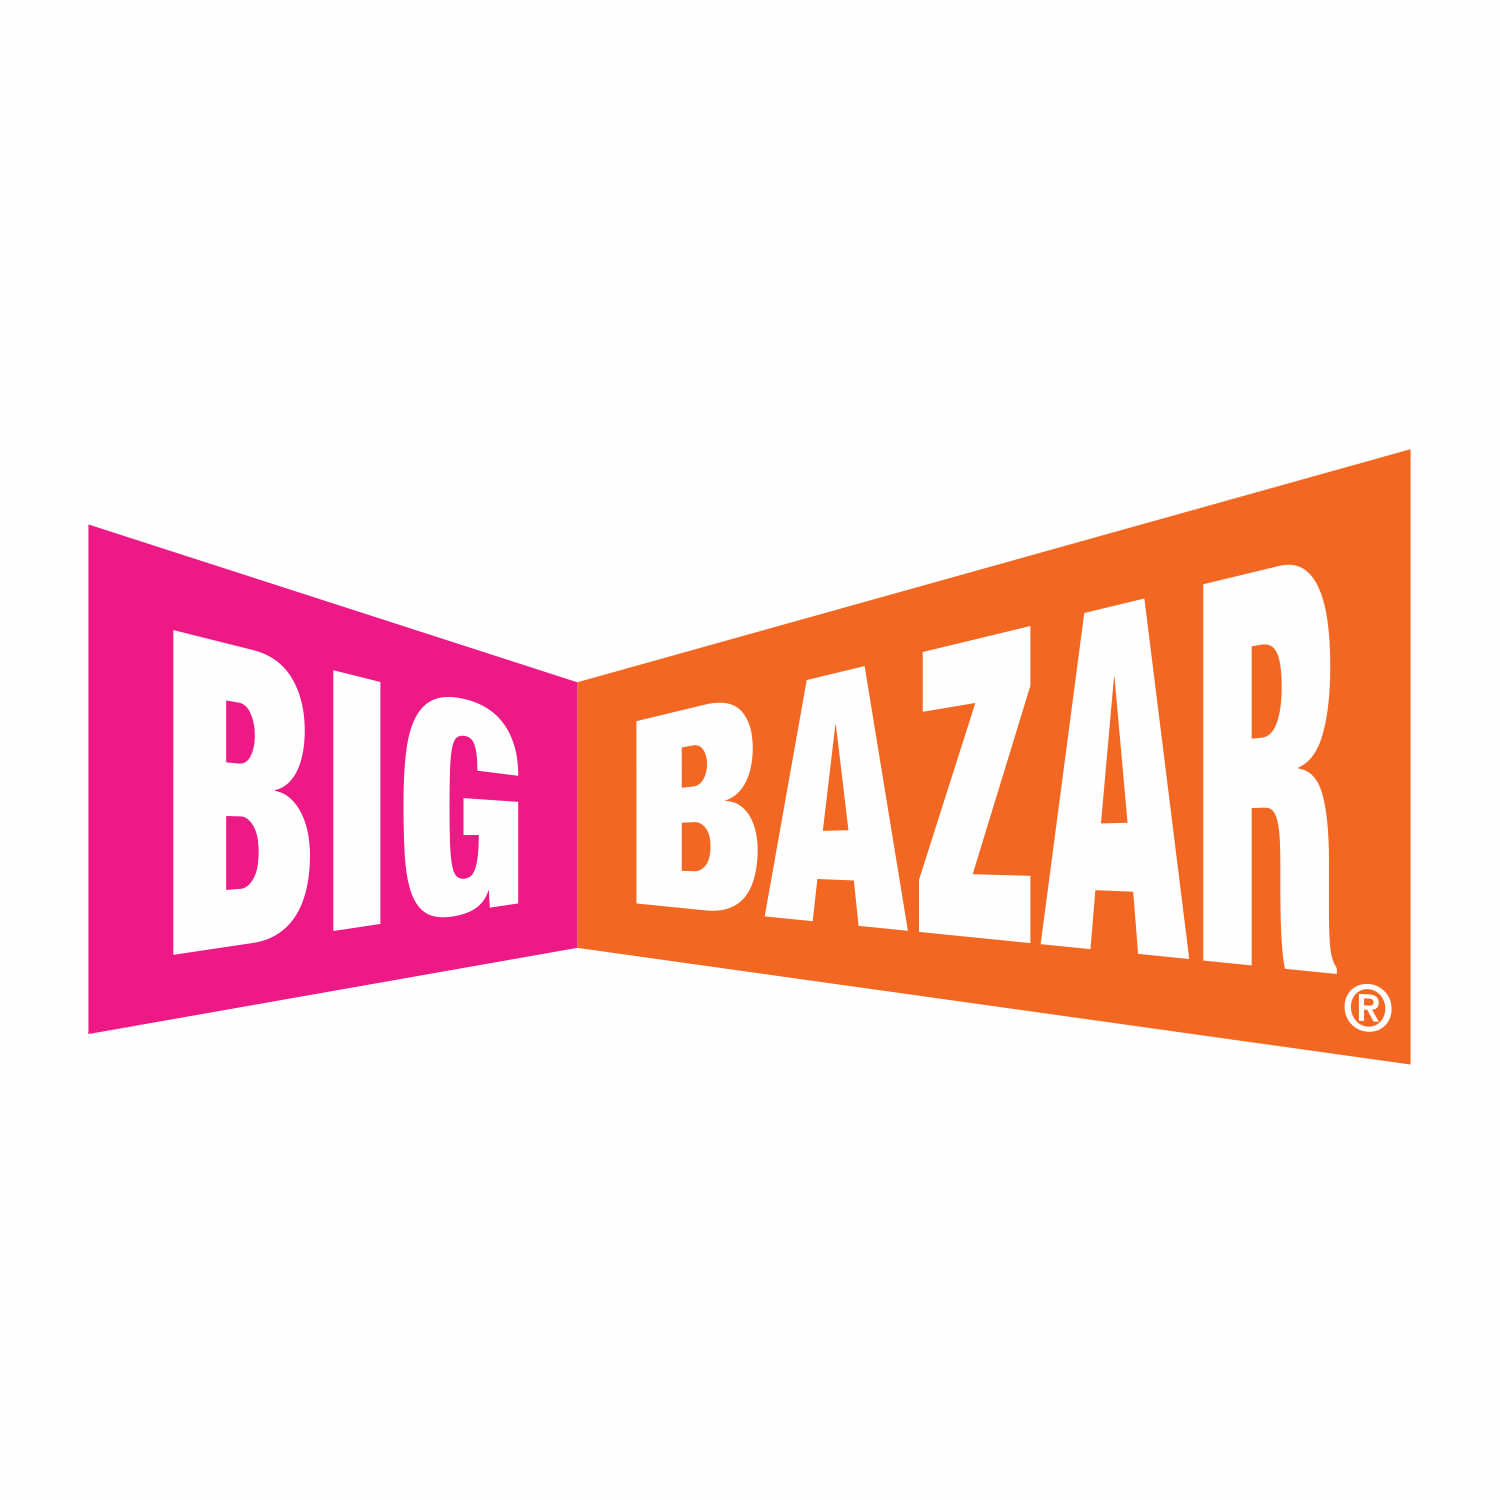 Big Bazar winkel